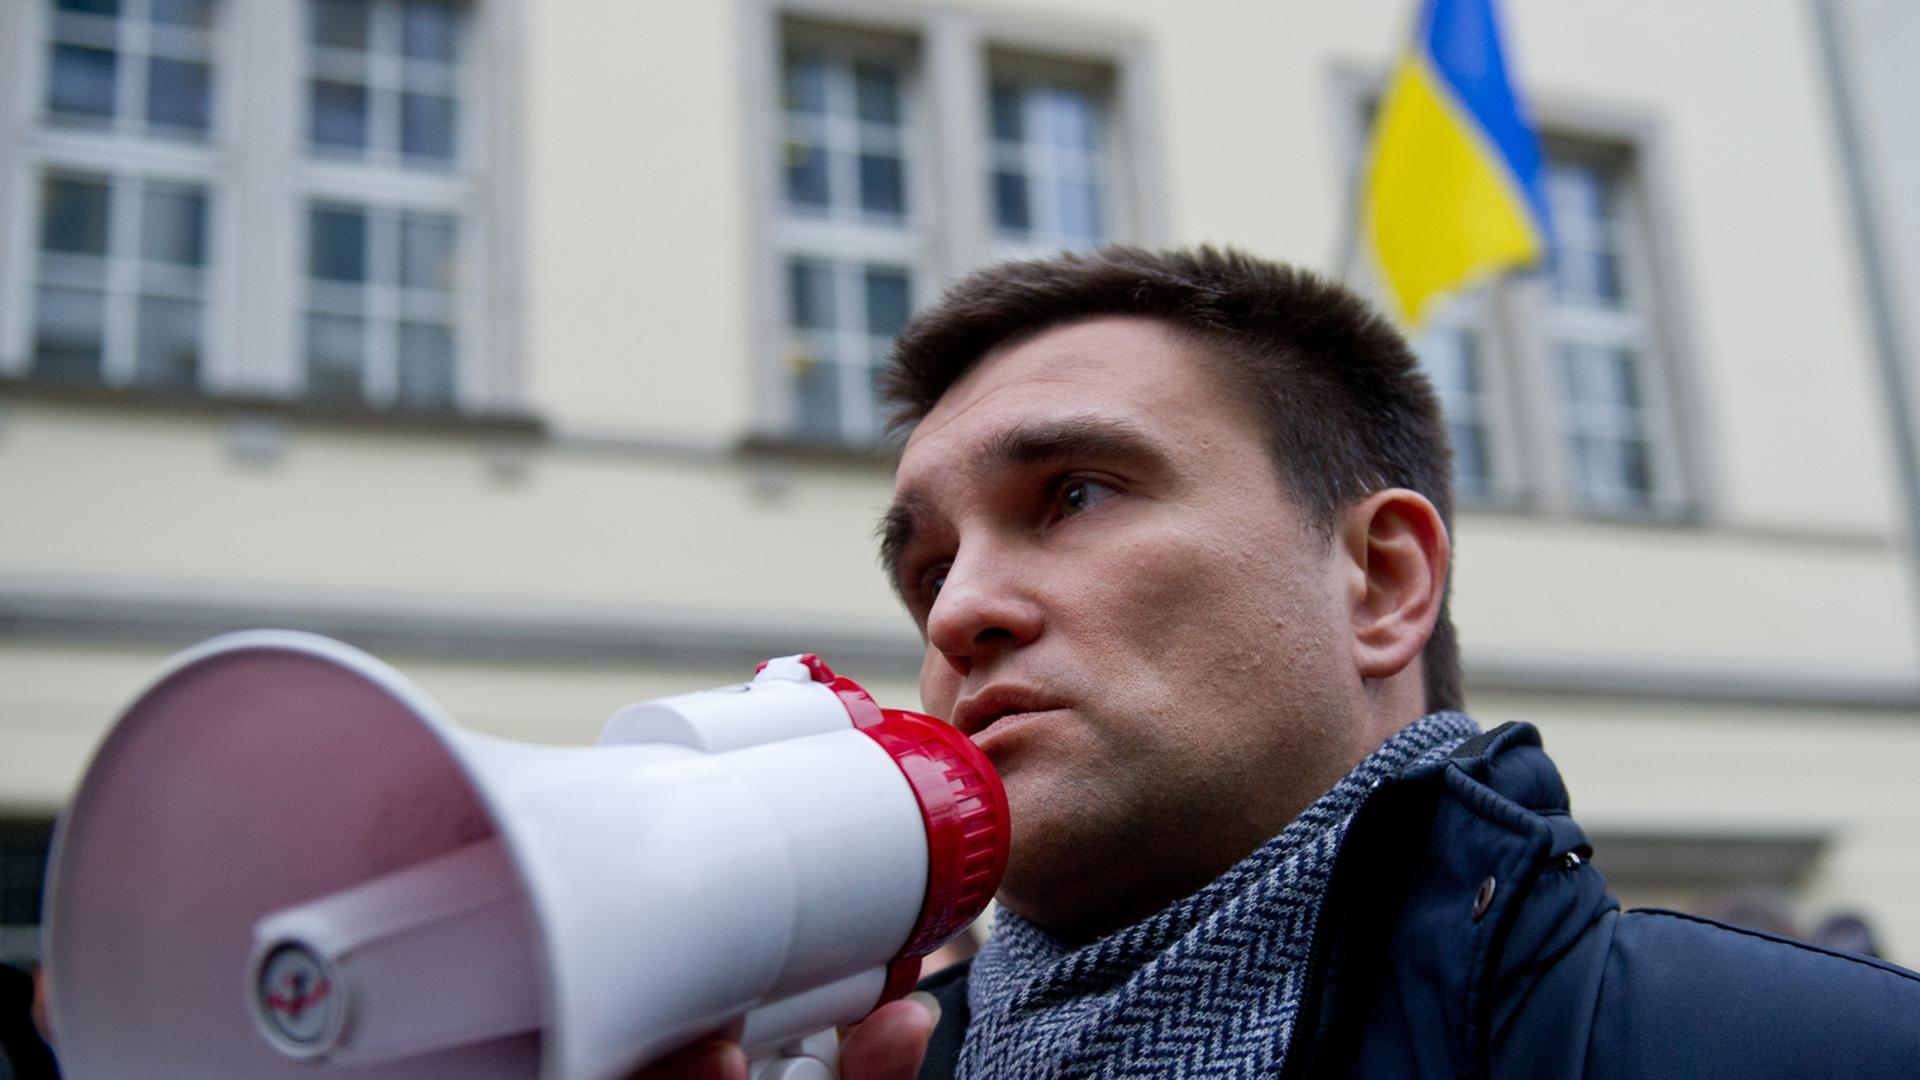 Der ukrainische Botschafter in Deutschland, Pavlo Klimkin, spricht in ein Megaphon, im Hintergrund mehrere Menschen und das Botschaftsgebäude mit der ukrainischen Flagge